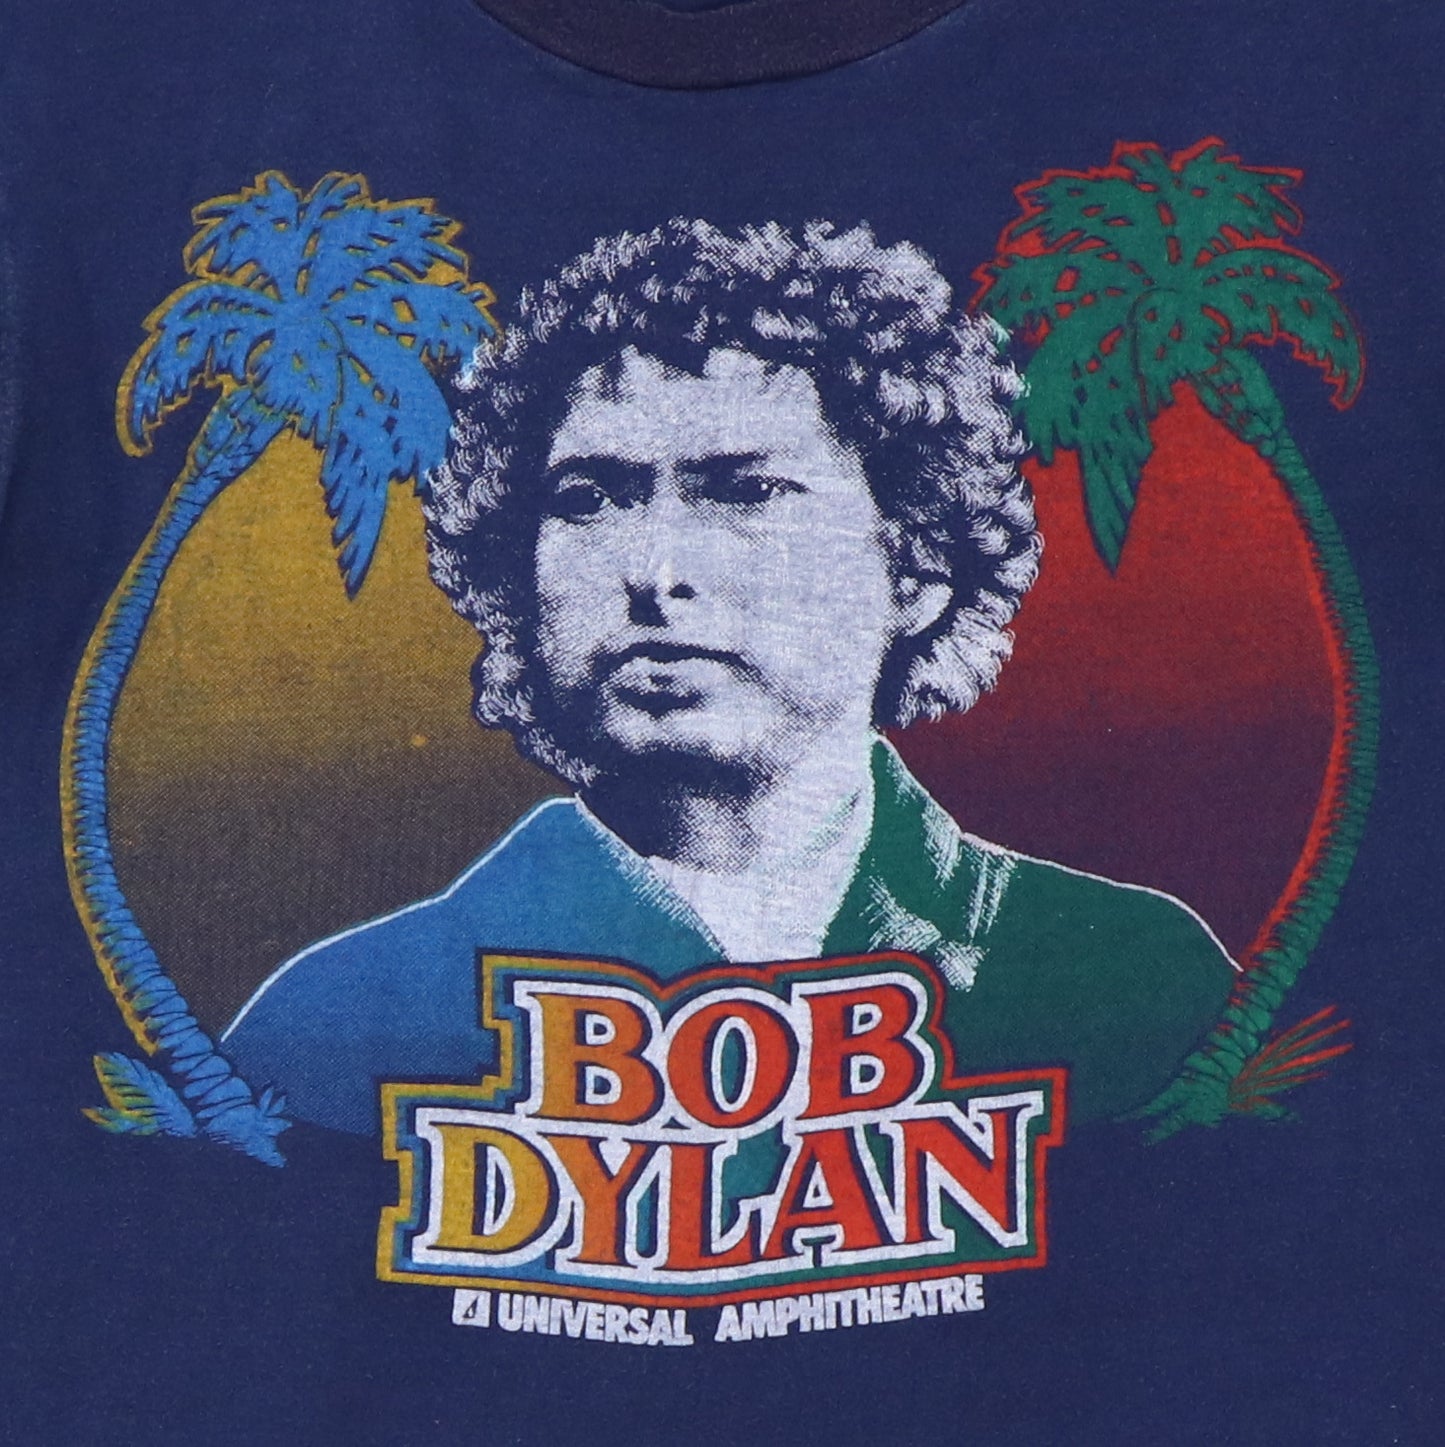 1978 Bob Dylan Universal Amphitheater Concert Shirt